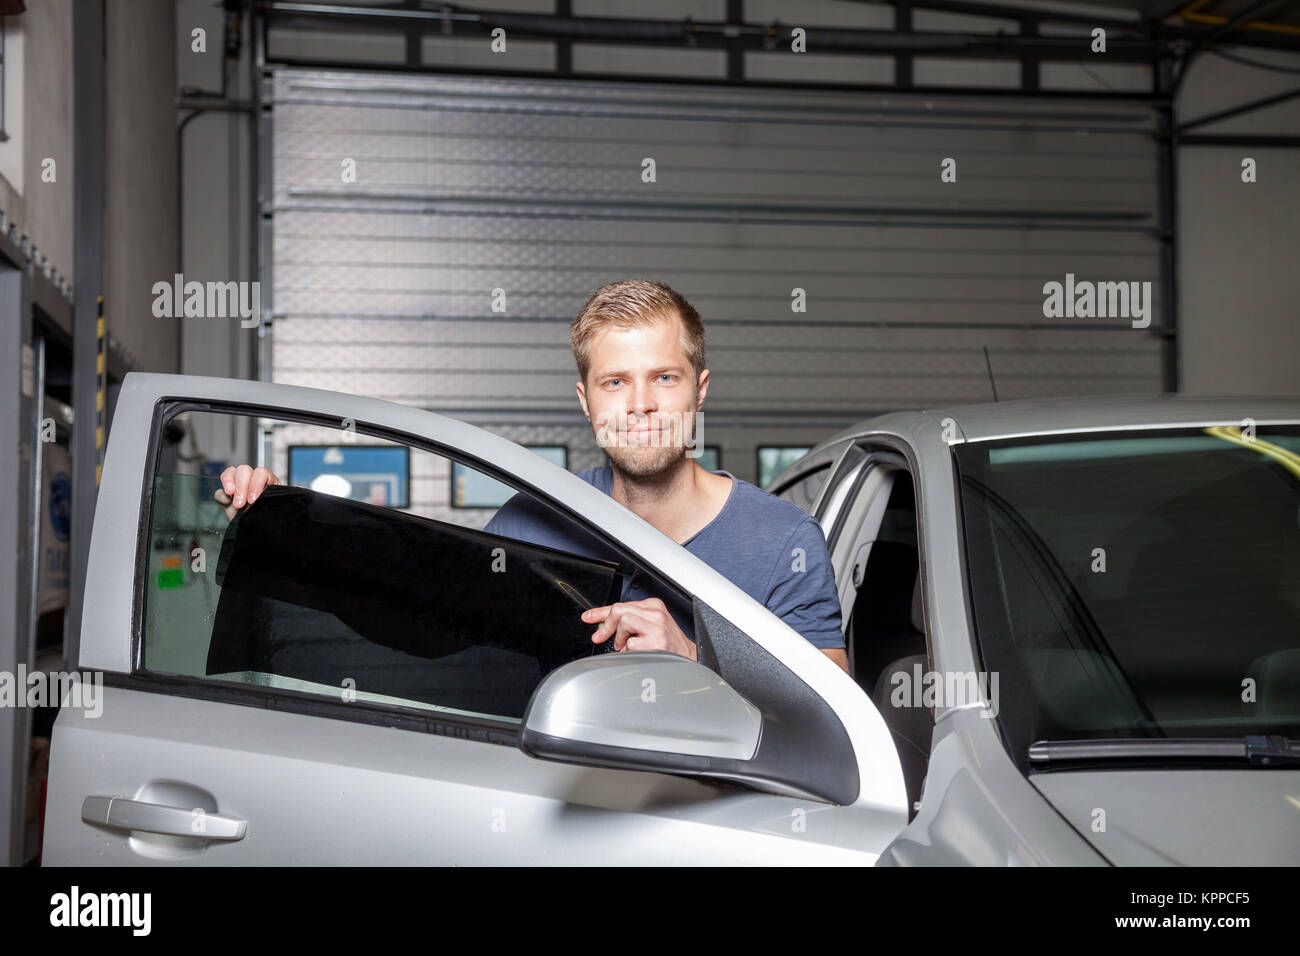 Die Tönung Folie auf ein Auto Fenster Stockfotografie - Alamy